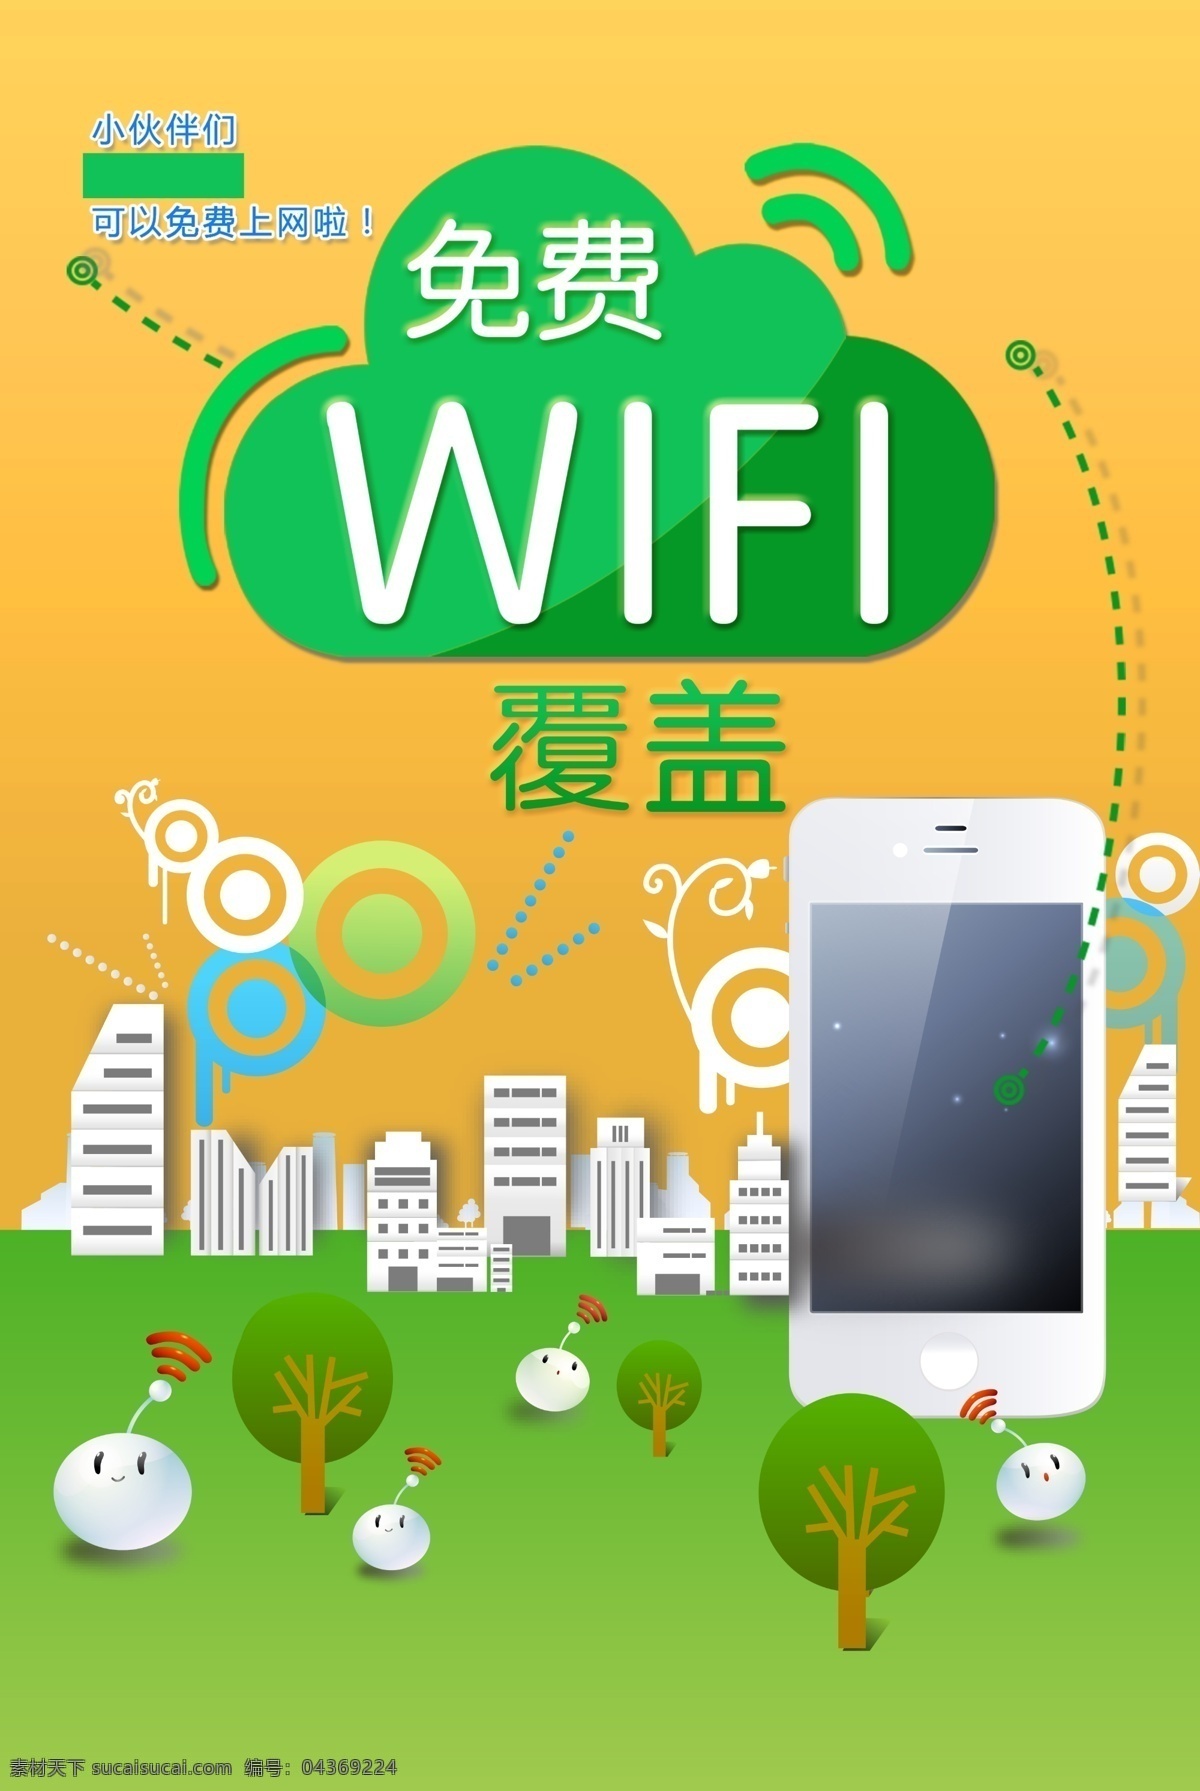 免费wifi wifi覆盖 无线网络 无线 wifi 连接 wifi连接 手机连网 公益标语